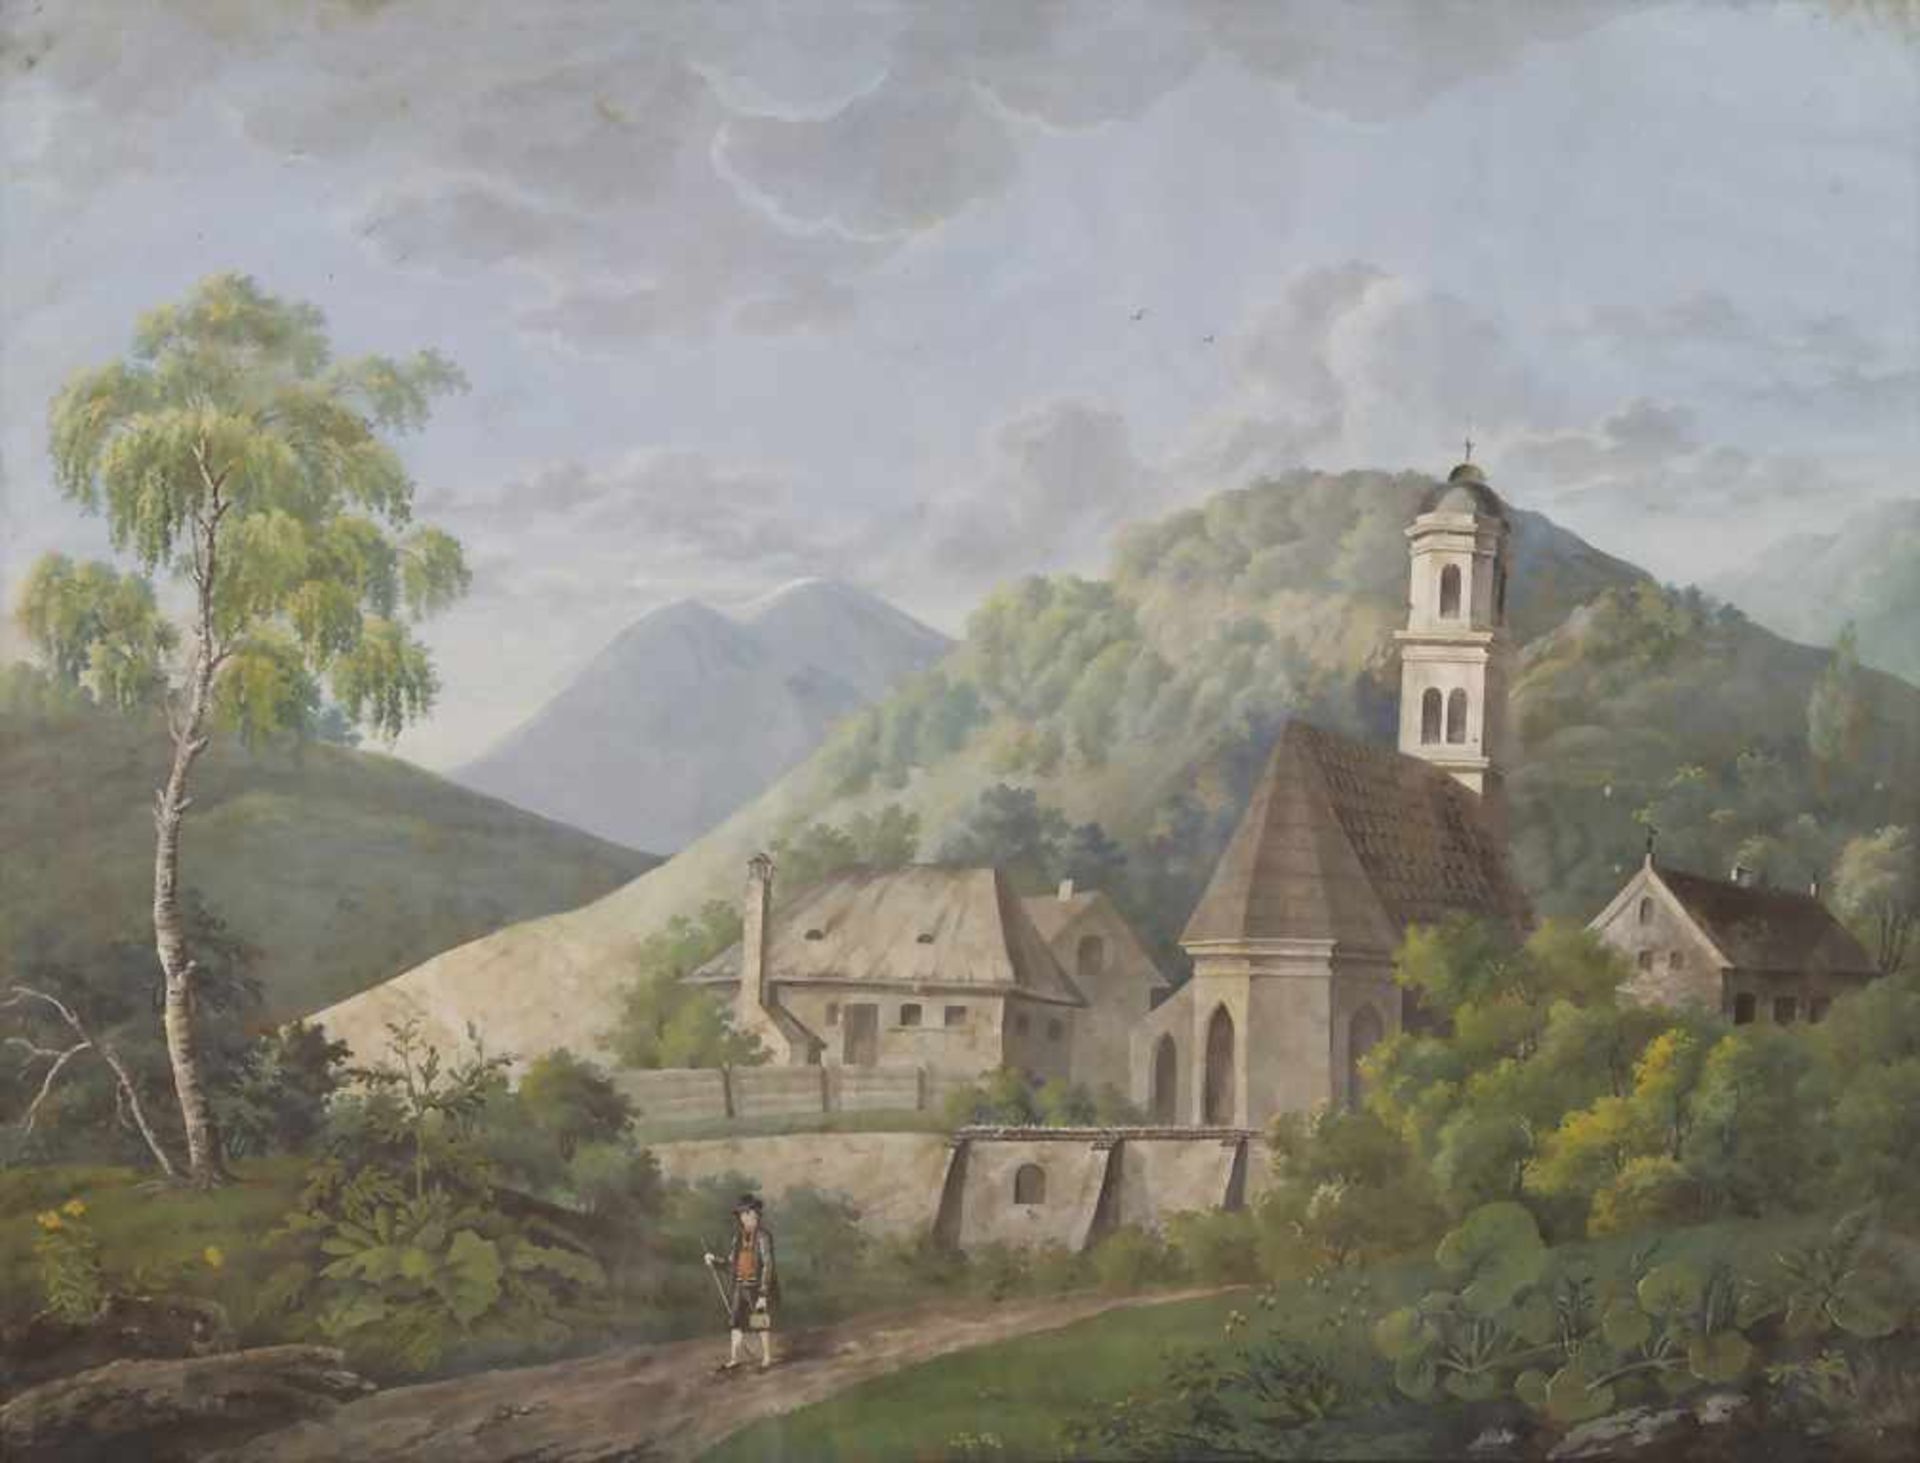 Künster des 19. Jh., 'Landschaft mit Dorf und Figurenstaffage' / 'A landscape with village and